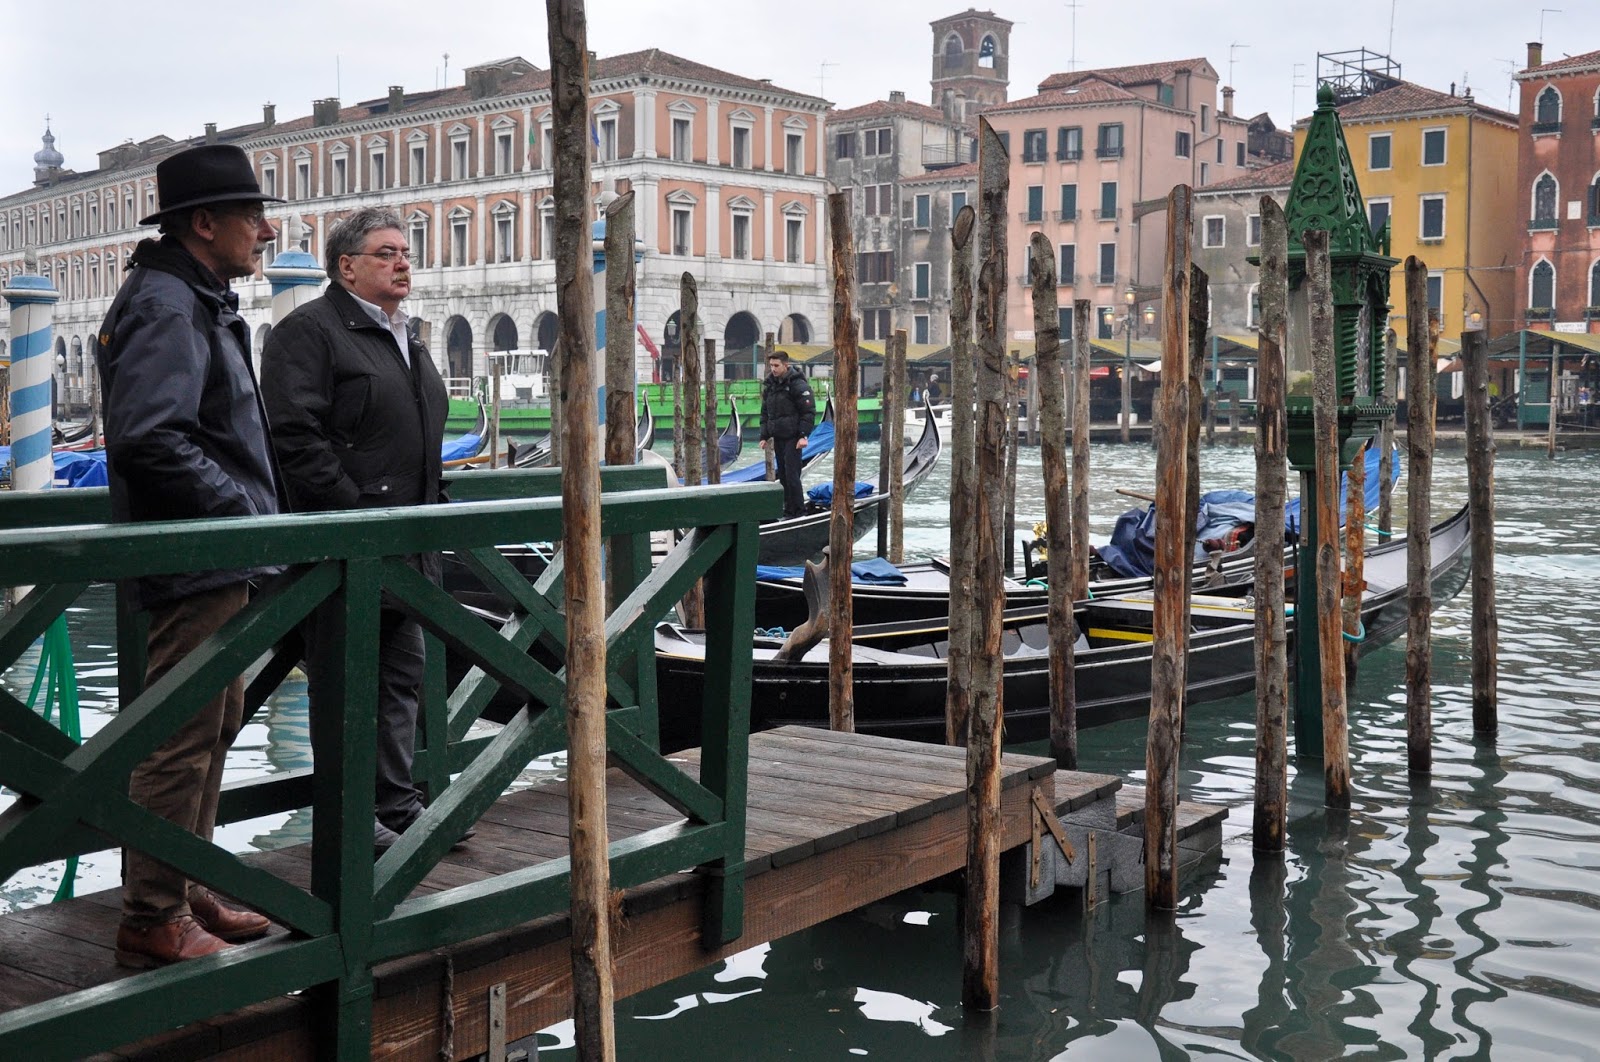 Queuing for the traghetto, Venice, Italy